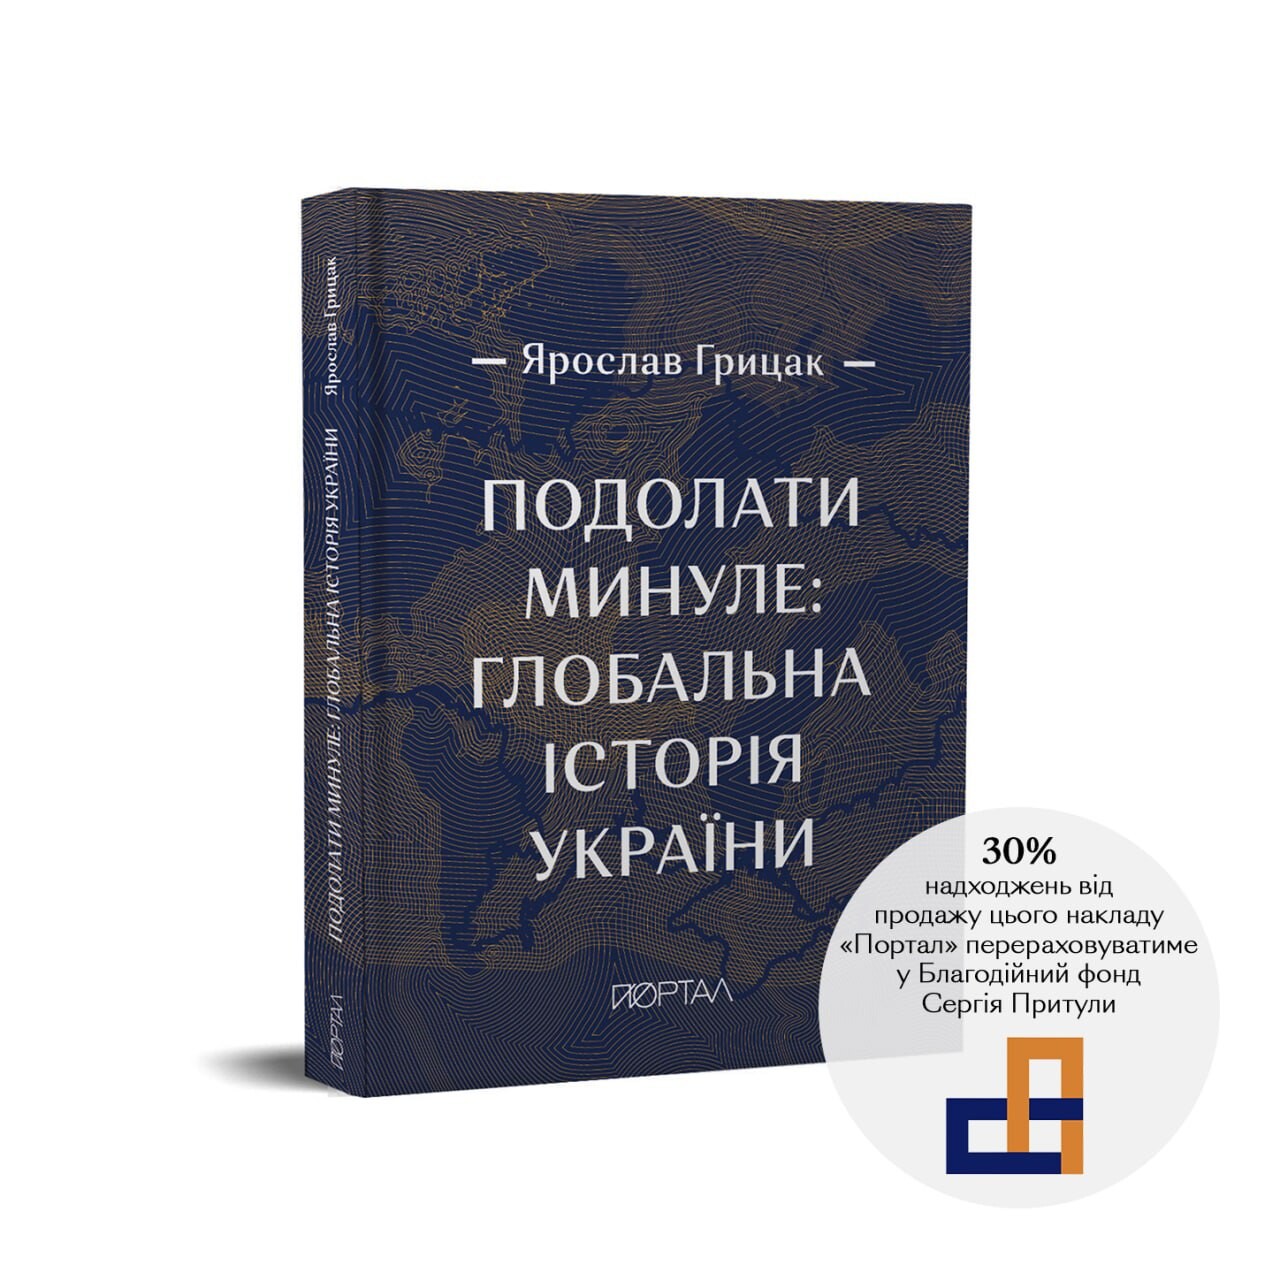 Подолати минуле: глобальна історія України (подарункове видання) - Vivat